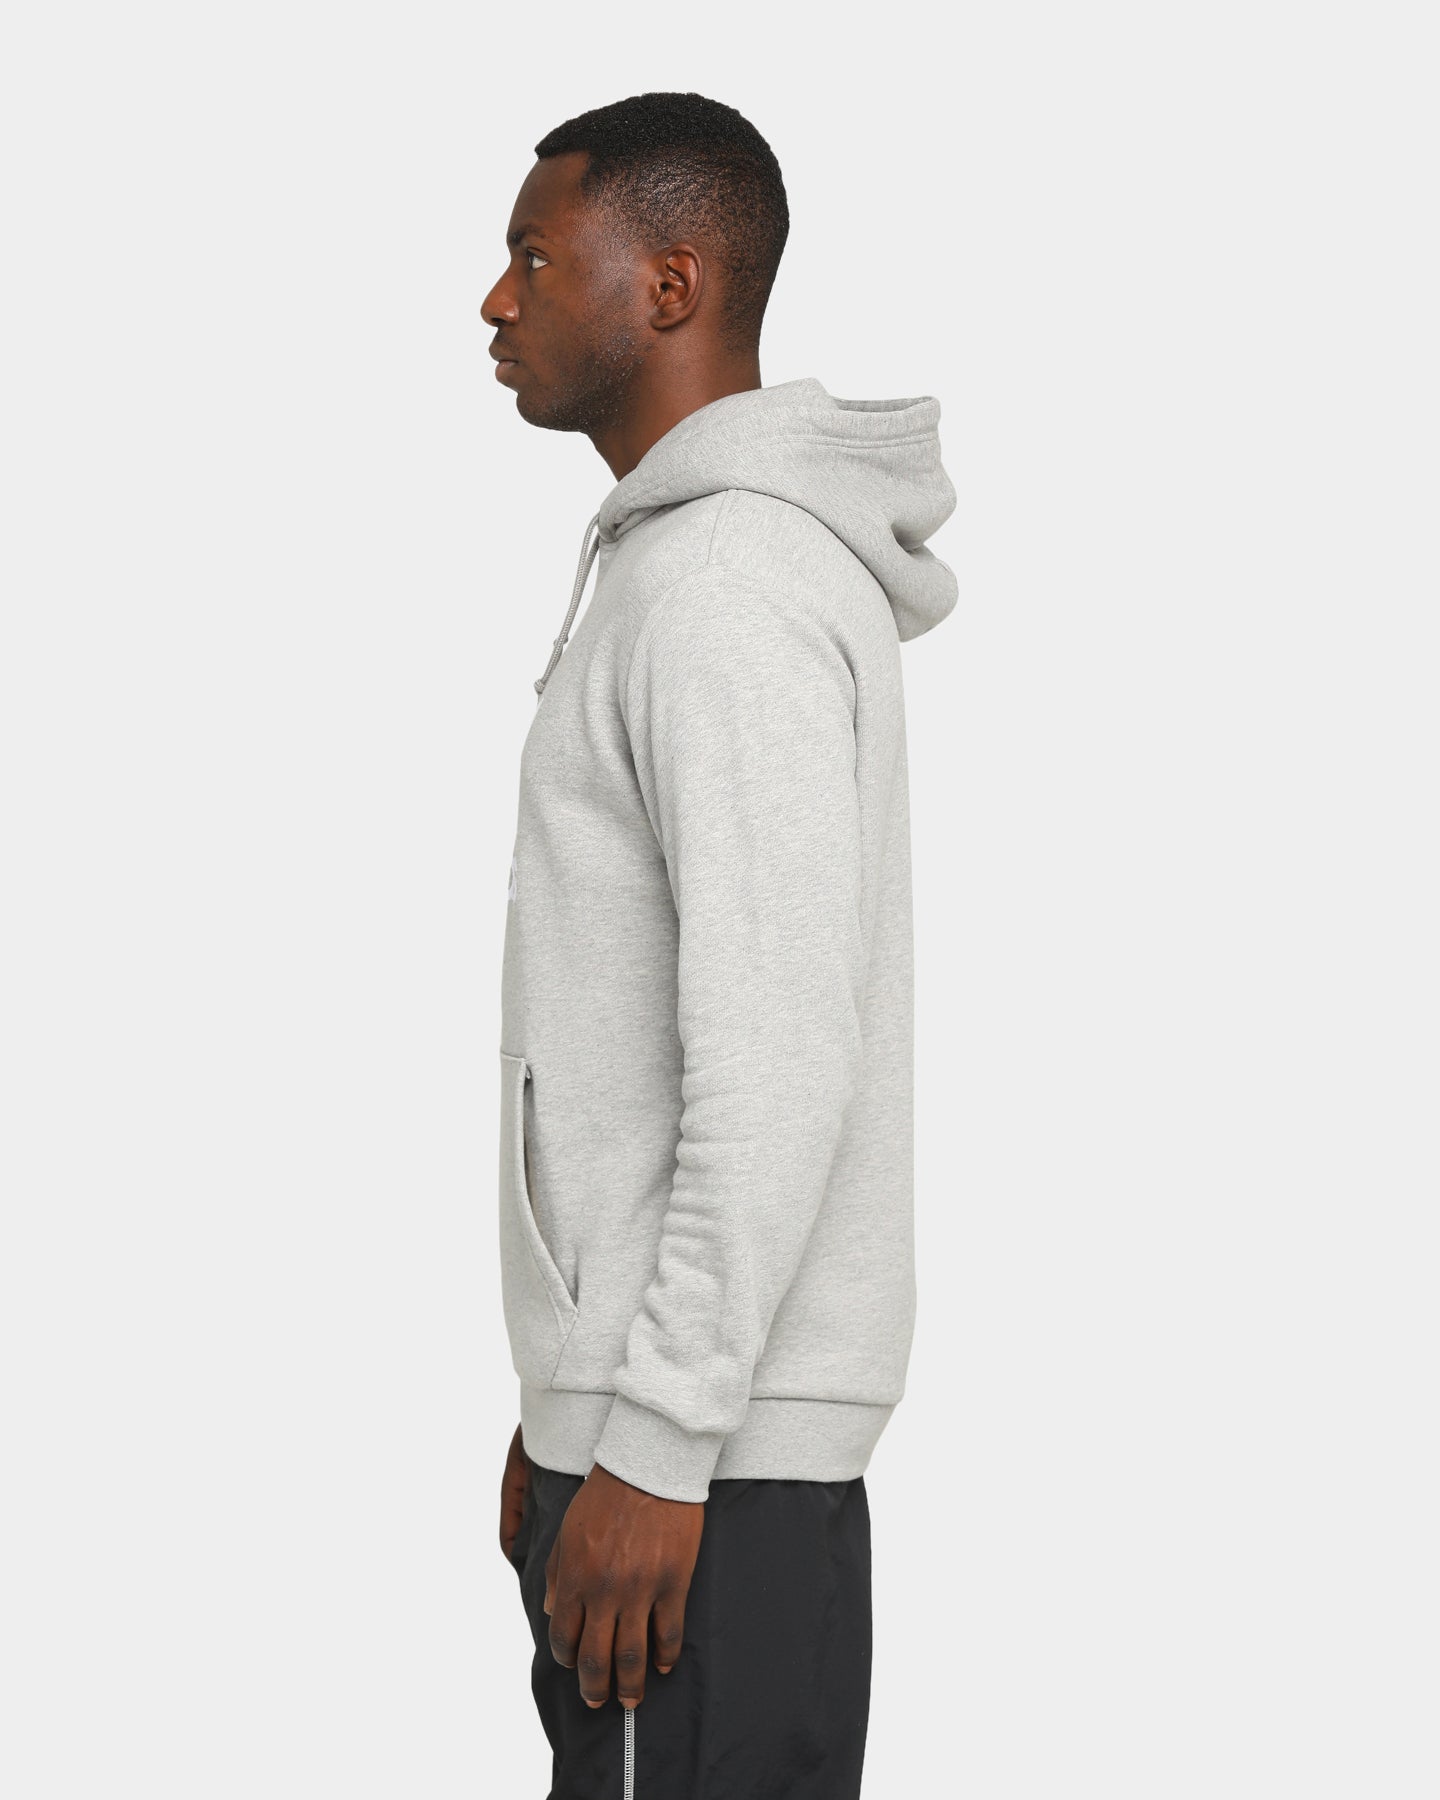 adidas trefoil hoodie grey